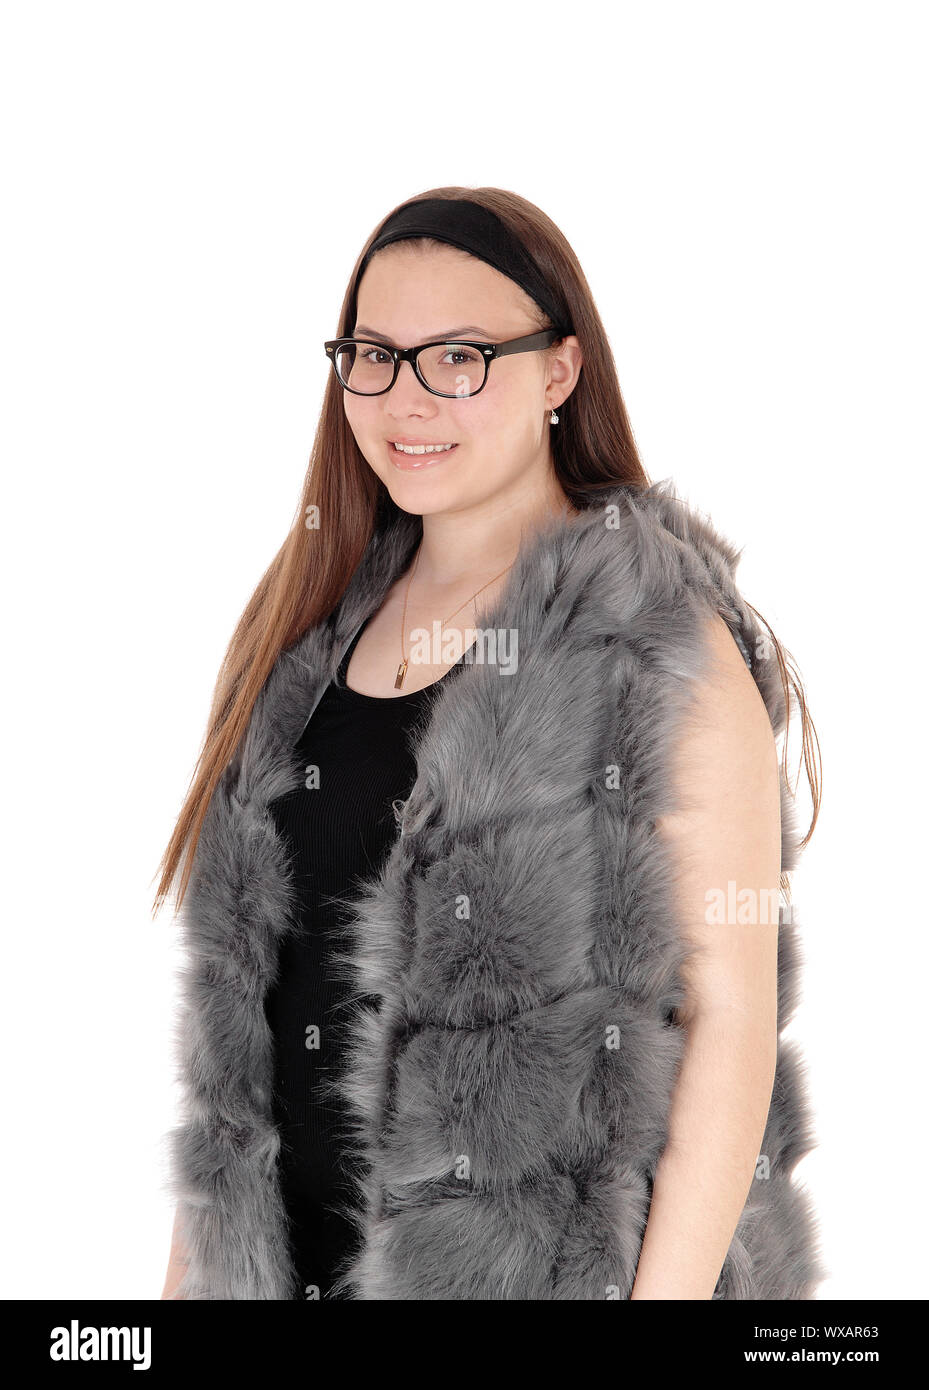 Young smiling girl debout dans sa veste en fourrure avec des lunettes Banque D'Images